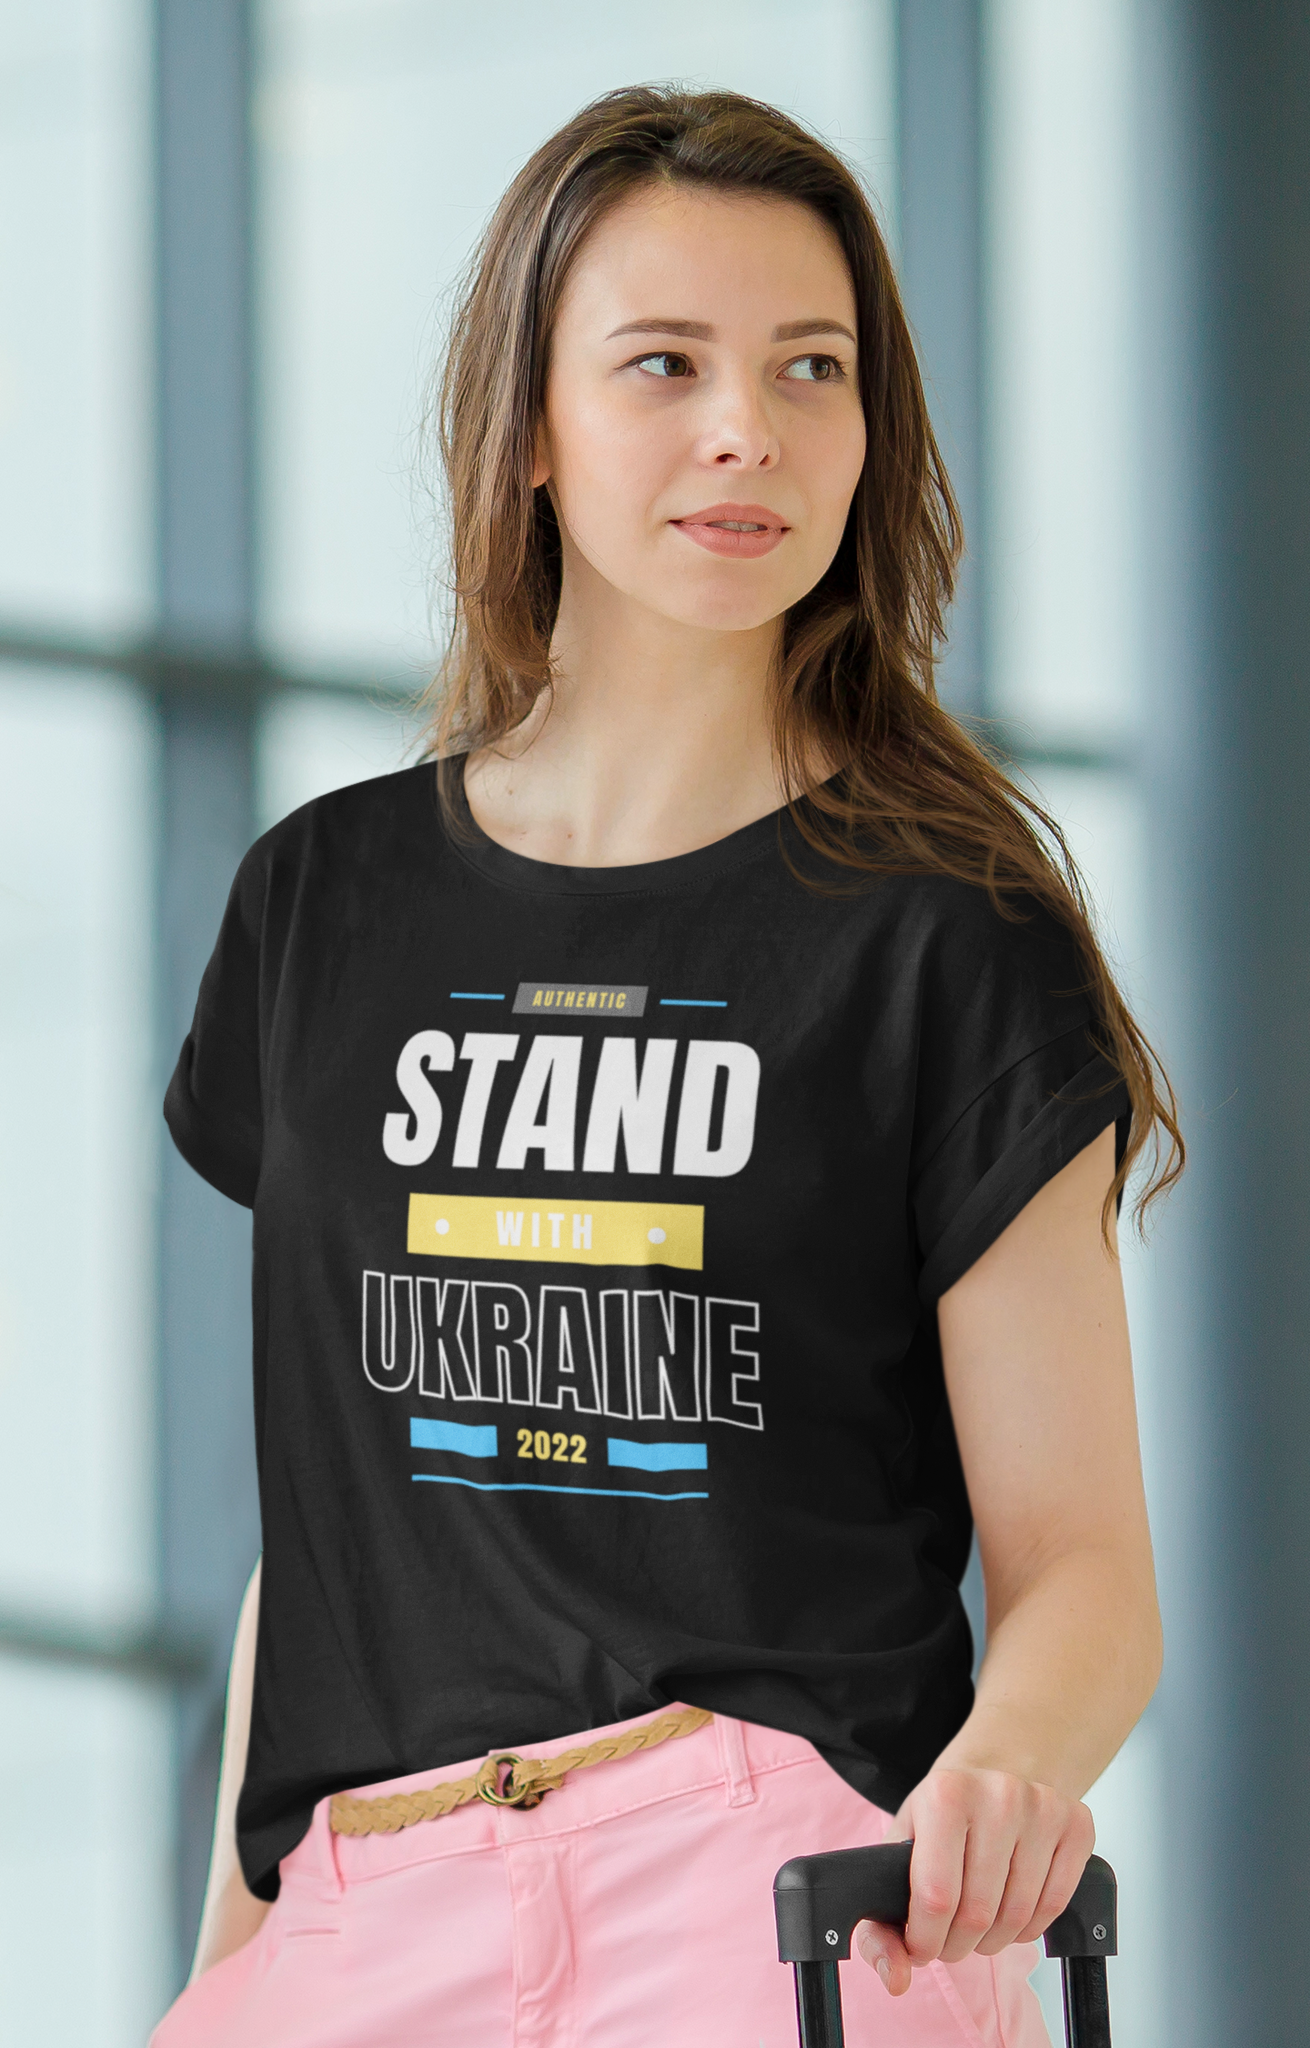 Stand With Ukraine T-Shirt Dam. Visa ditt stöd för Ukraina & dess medborgare